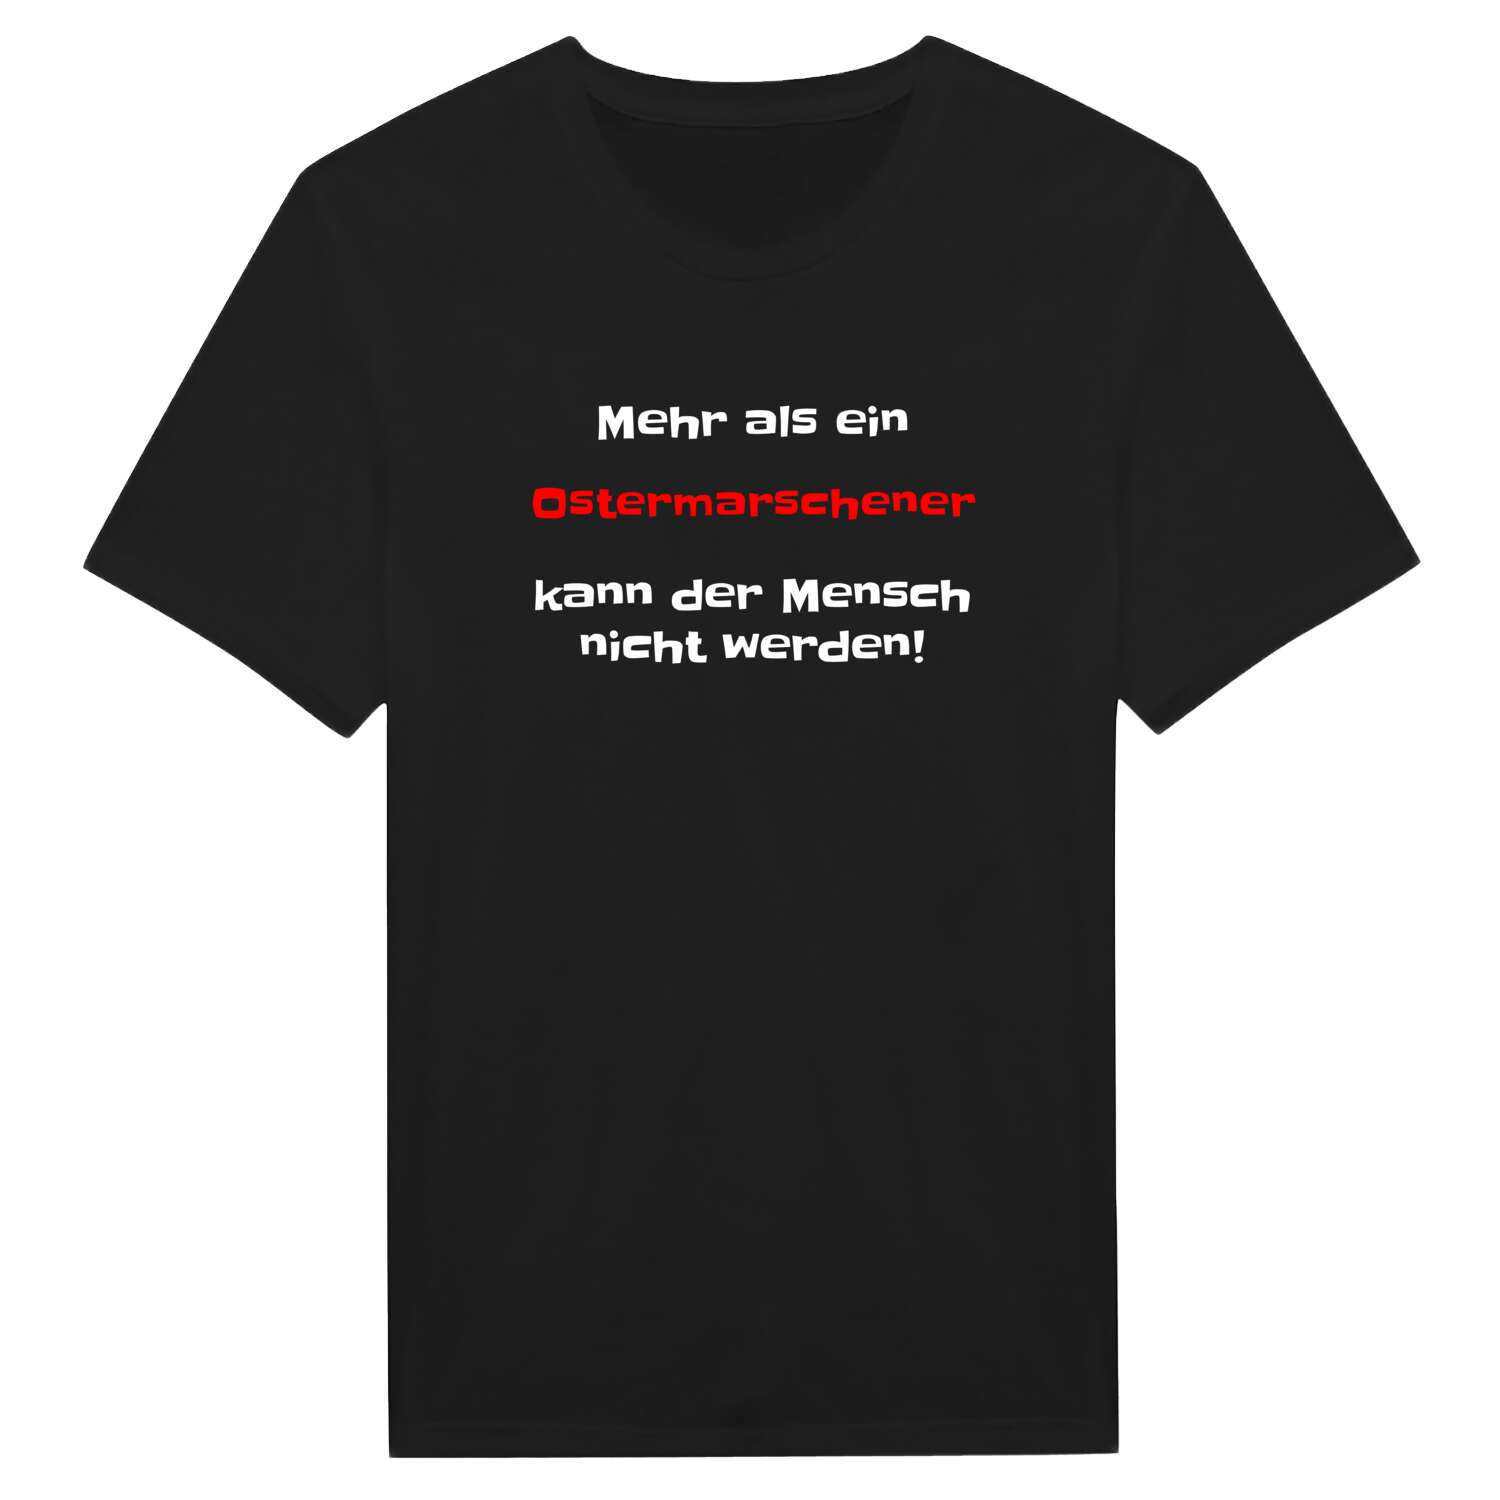 Ostermarsch T-Shirt »Mehr als ein«